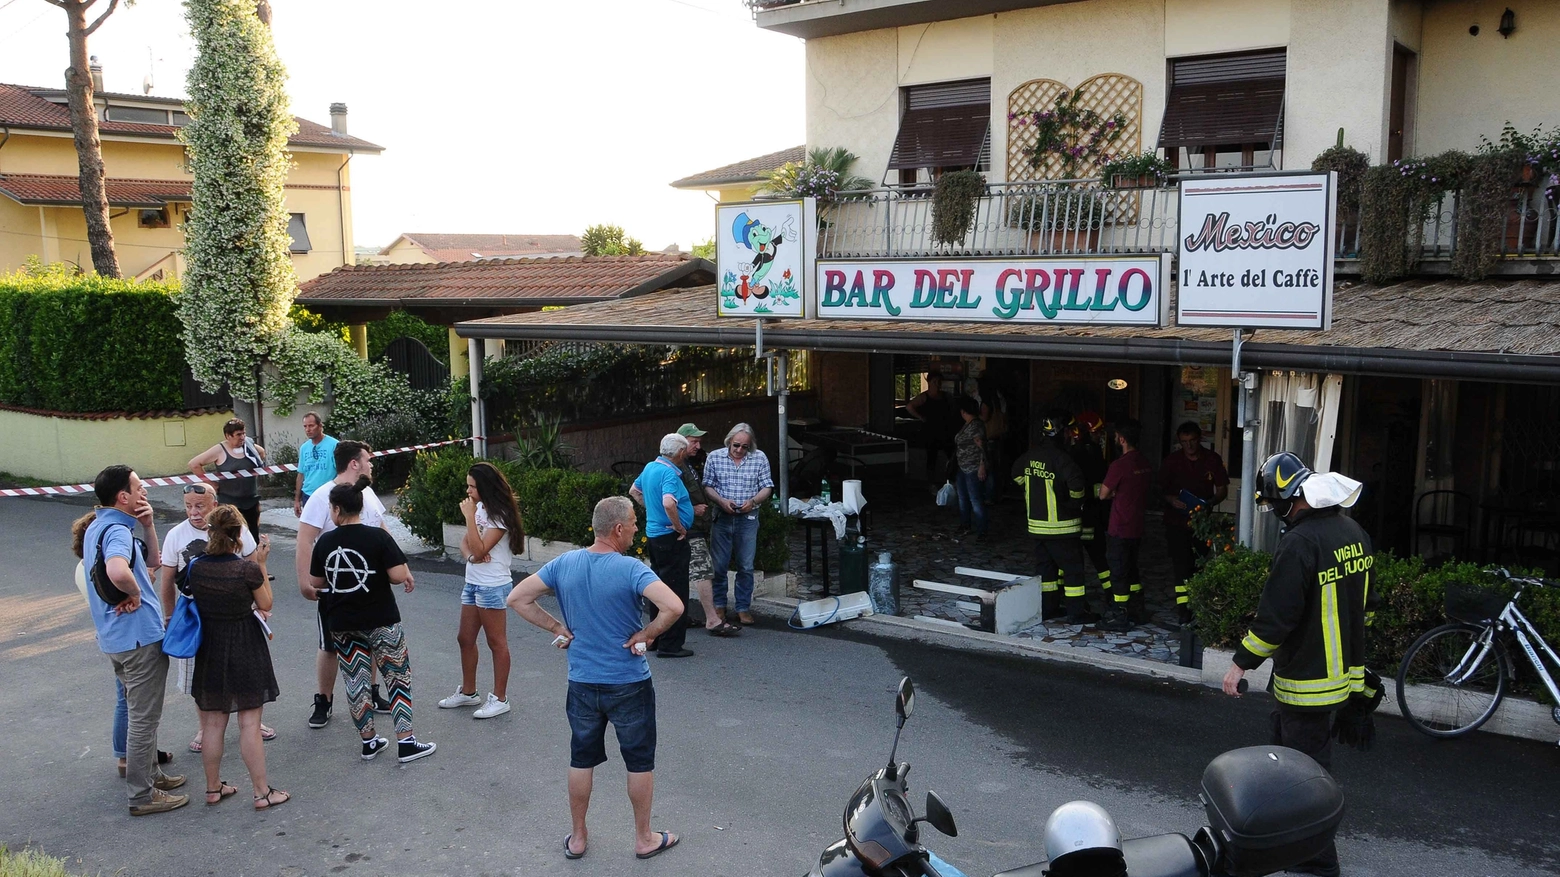 Il Bar del Grillo dove è avvenuta l'esplosione (foto Paola Nizza)